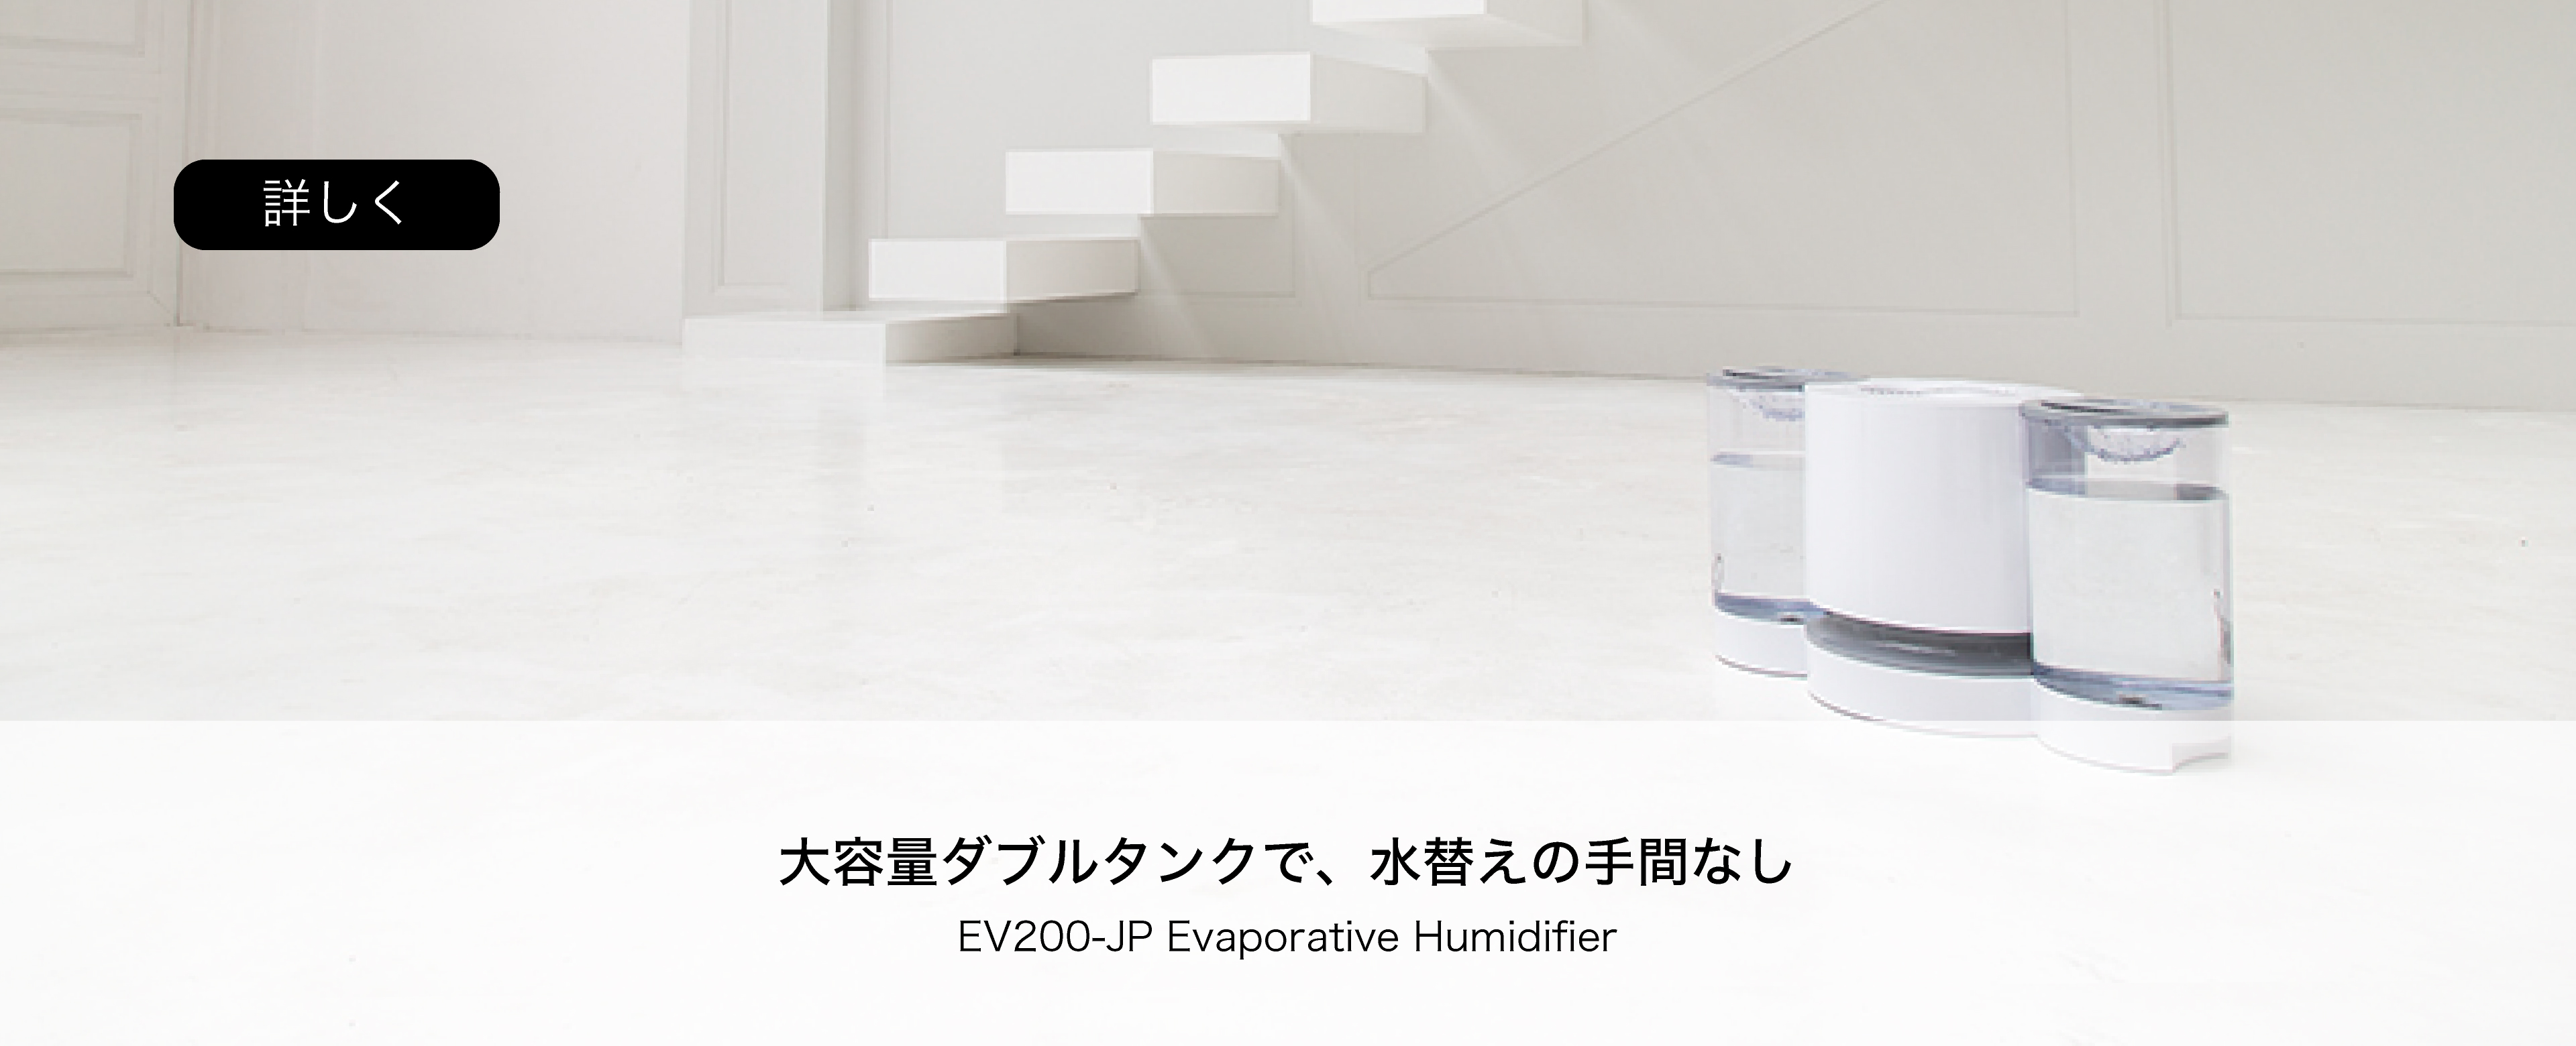 大容量ダブルタンクで水替えの手間なし EV200-JP Evaporative Humidifier 詳しく